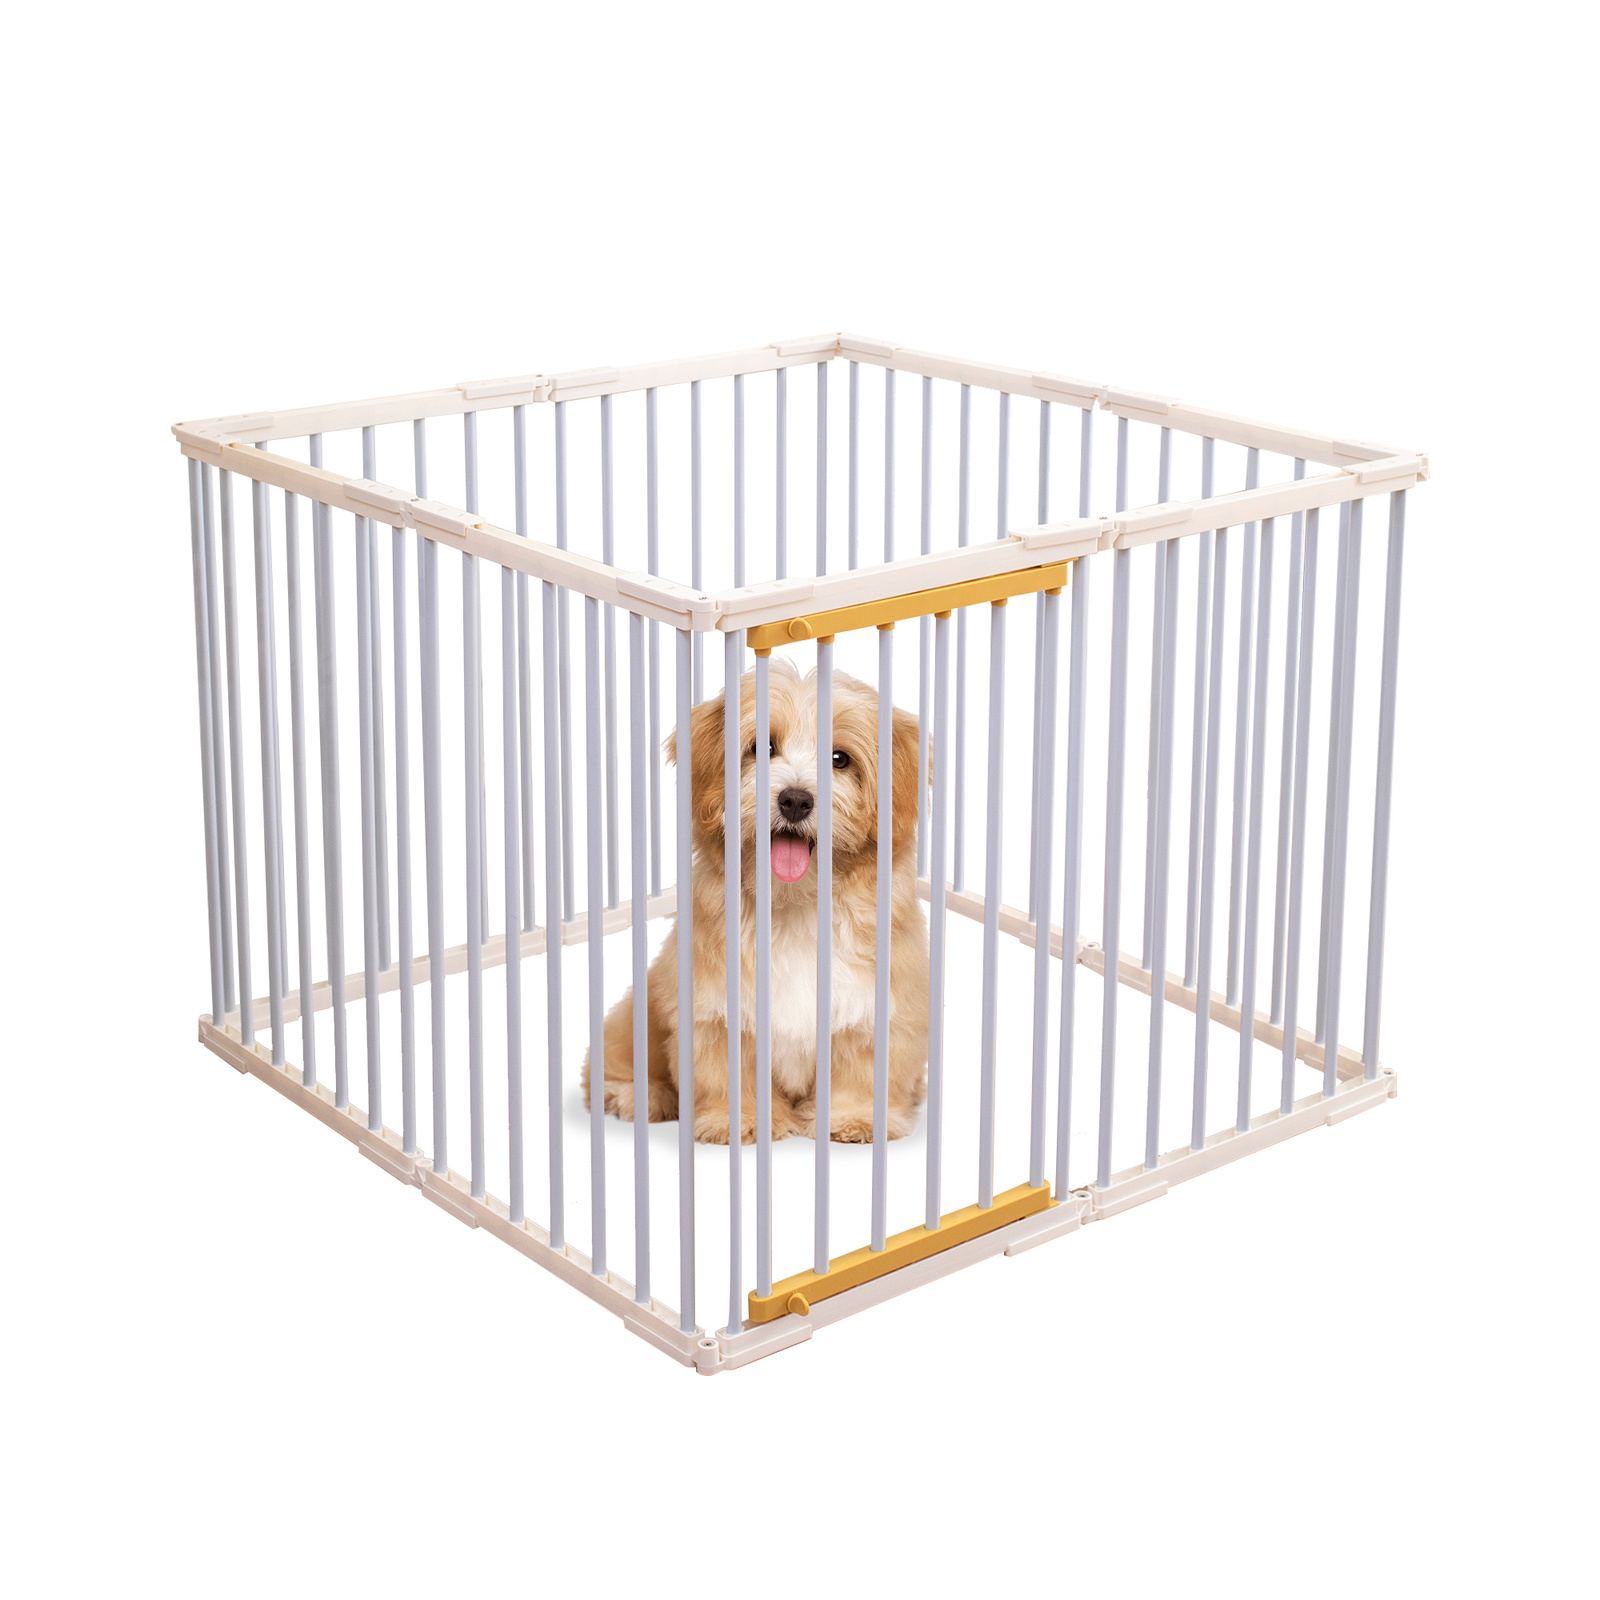 Portable Pet Dog Playpen Enclosure Cage 8 Panels